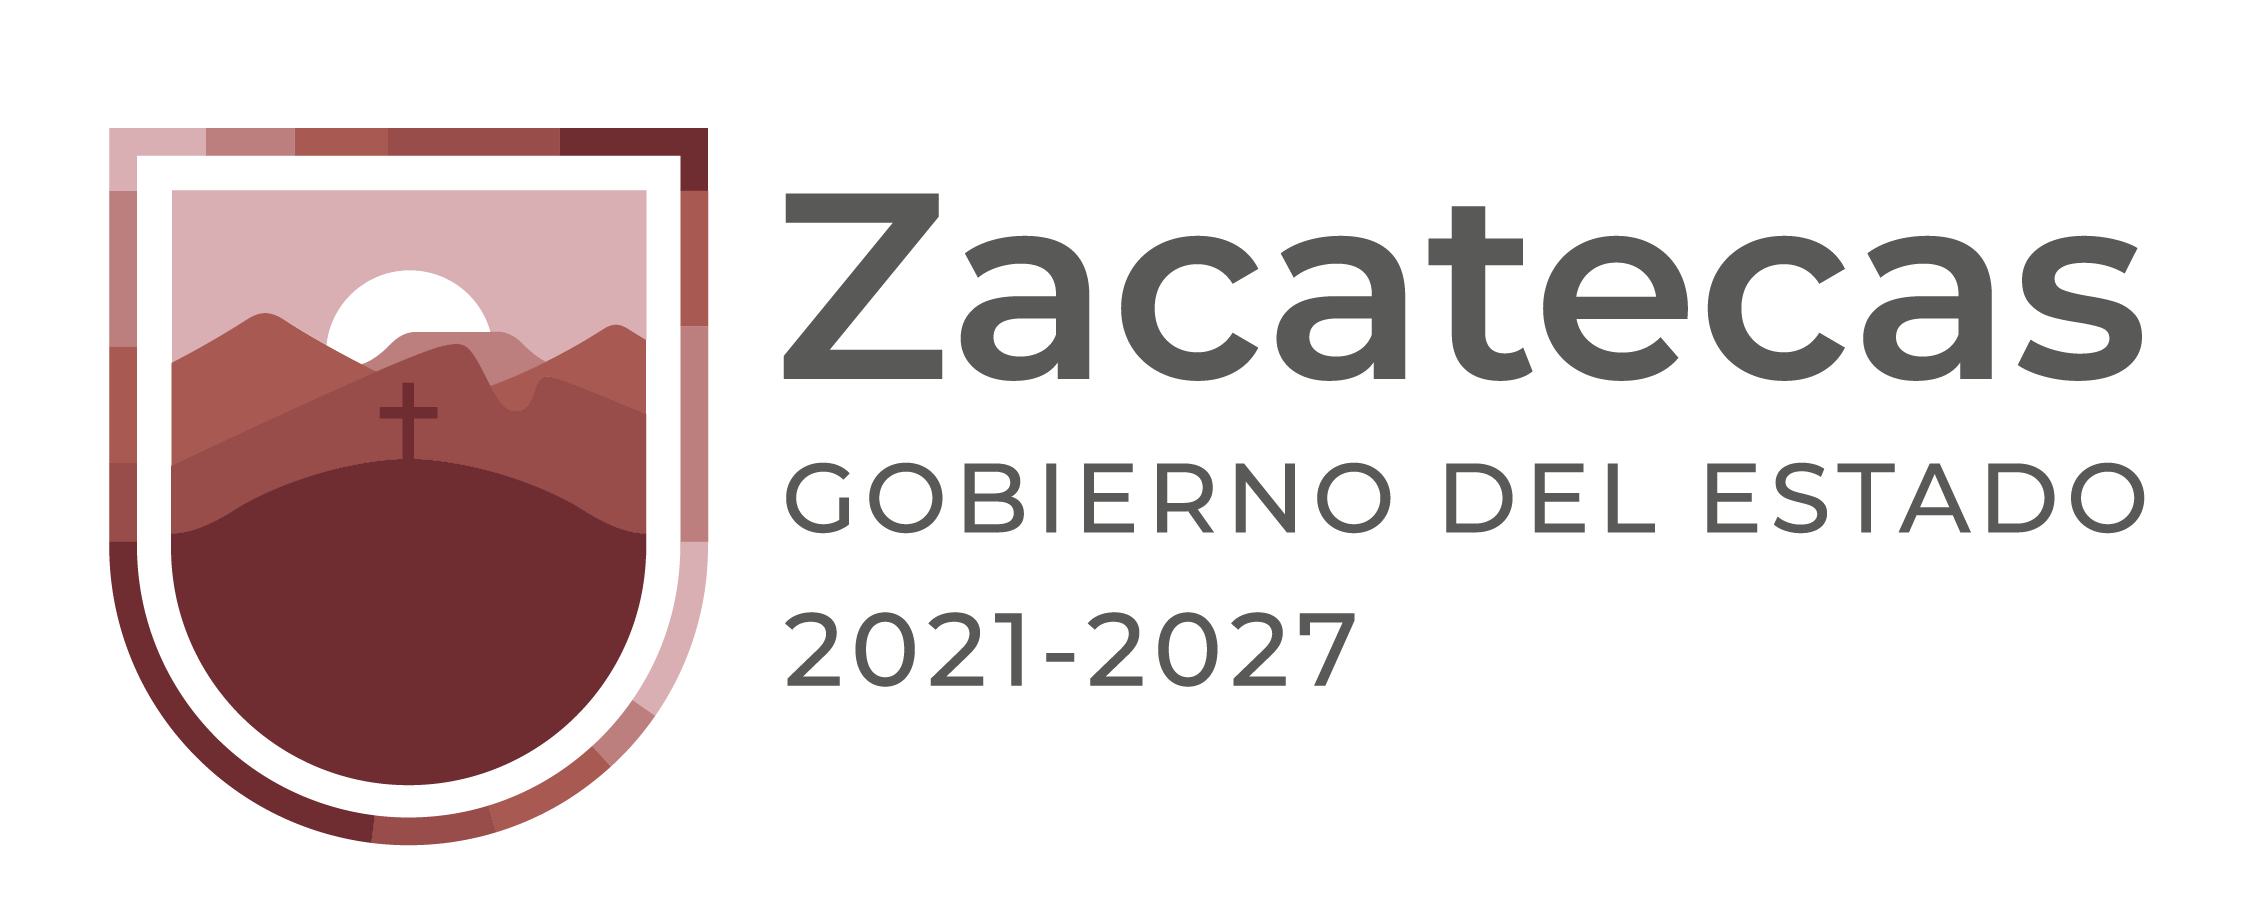 Gobierno del Estado de Zacatecas 